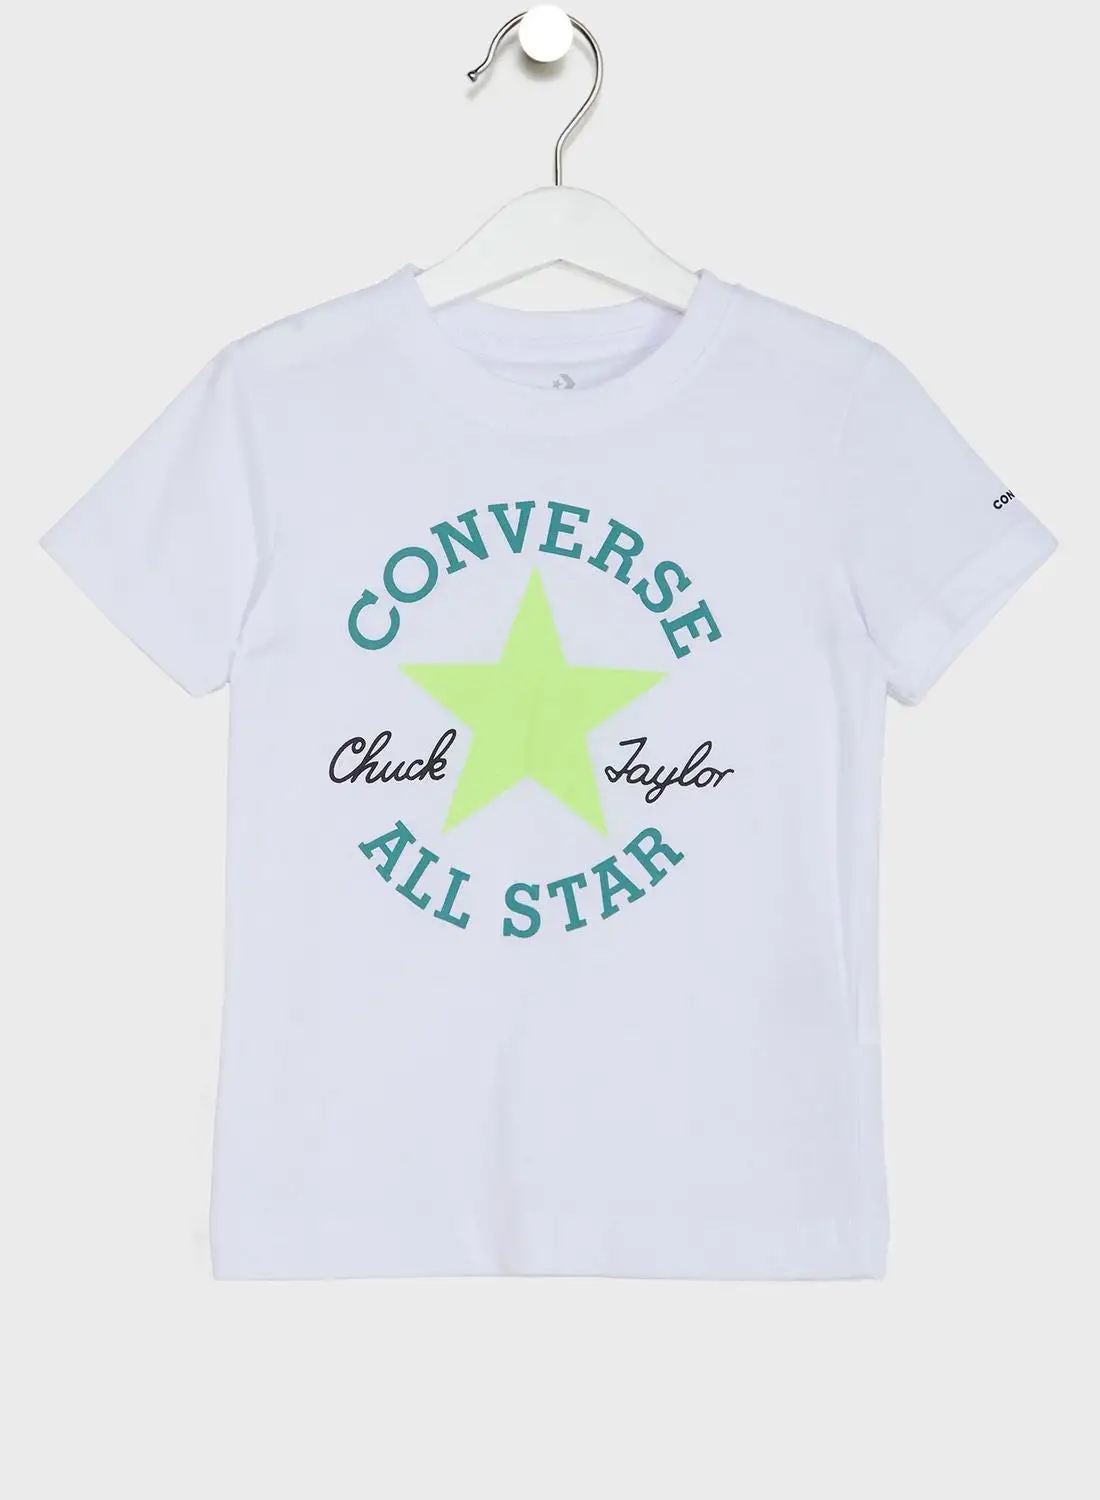 CONVERSE Kids Dissected Chuck Patch T-Shirt